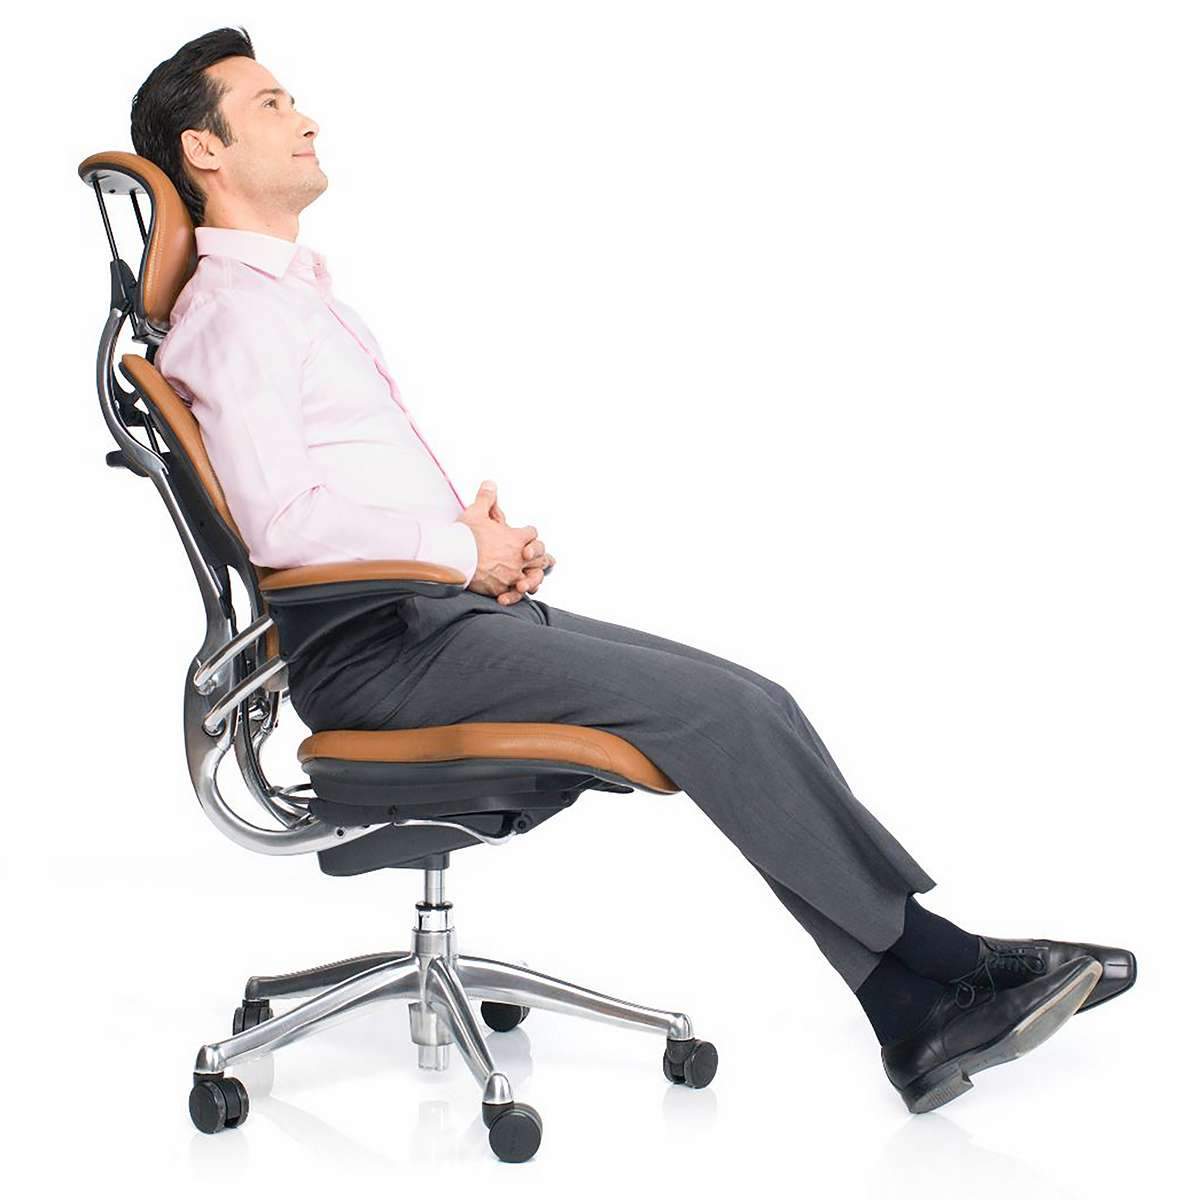 Кресло офисное для поясницы. Кресло Ergonomic Chair. Поясничная поддержка для офисного кресла. Кресло с поддержкой поясницы. Офисный стул с поддержкой поясницы.